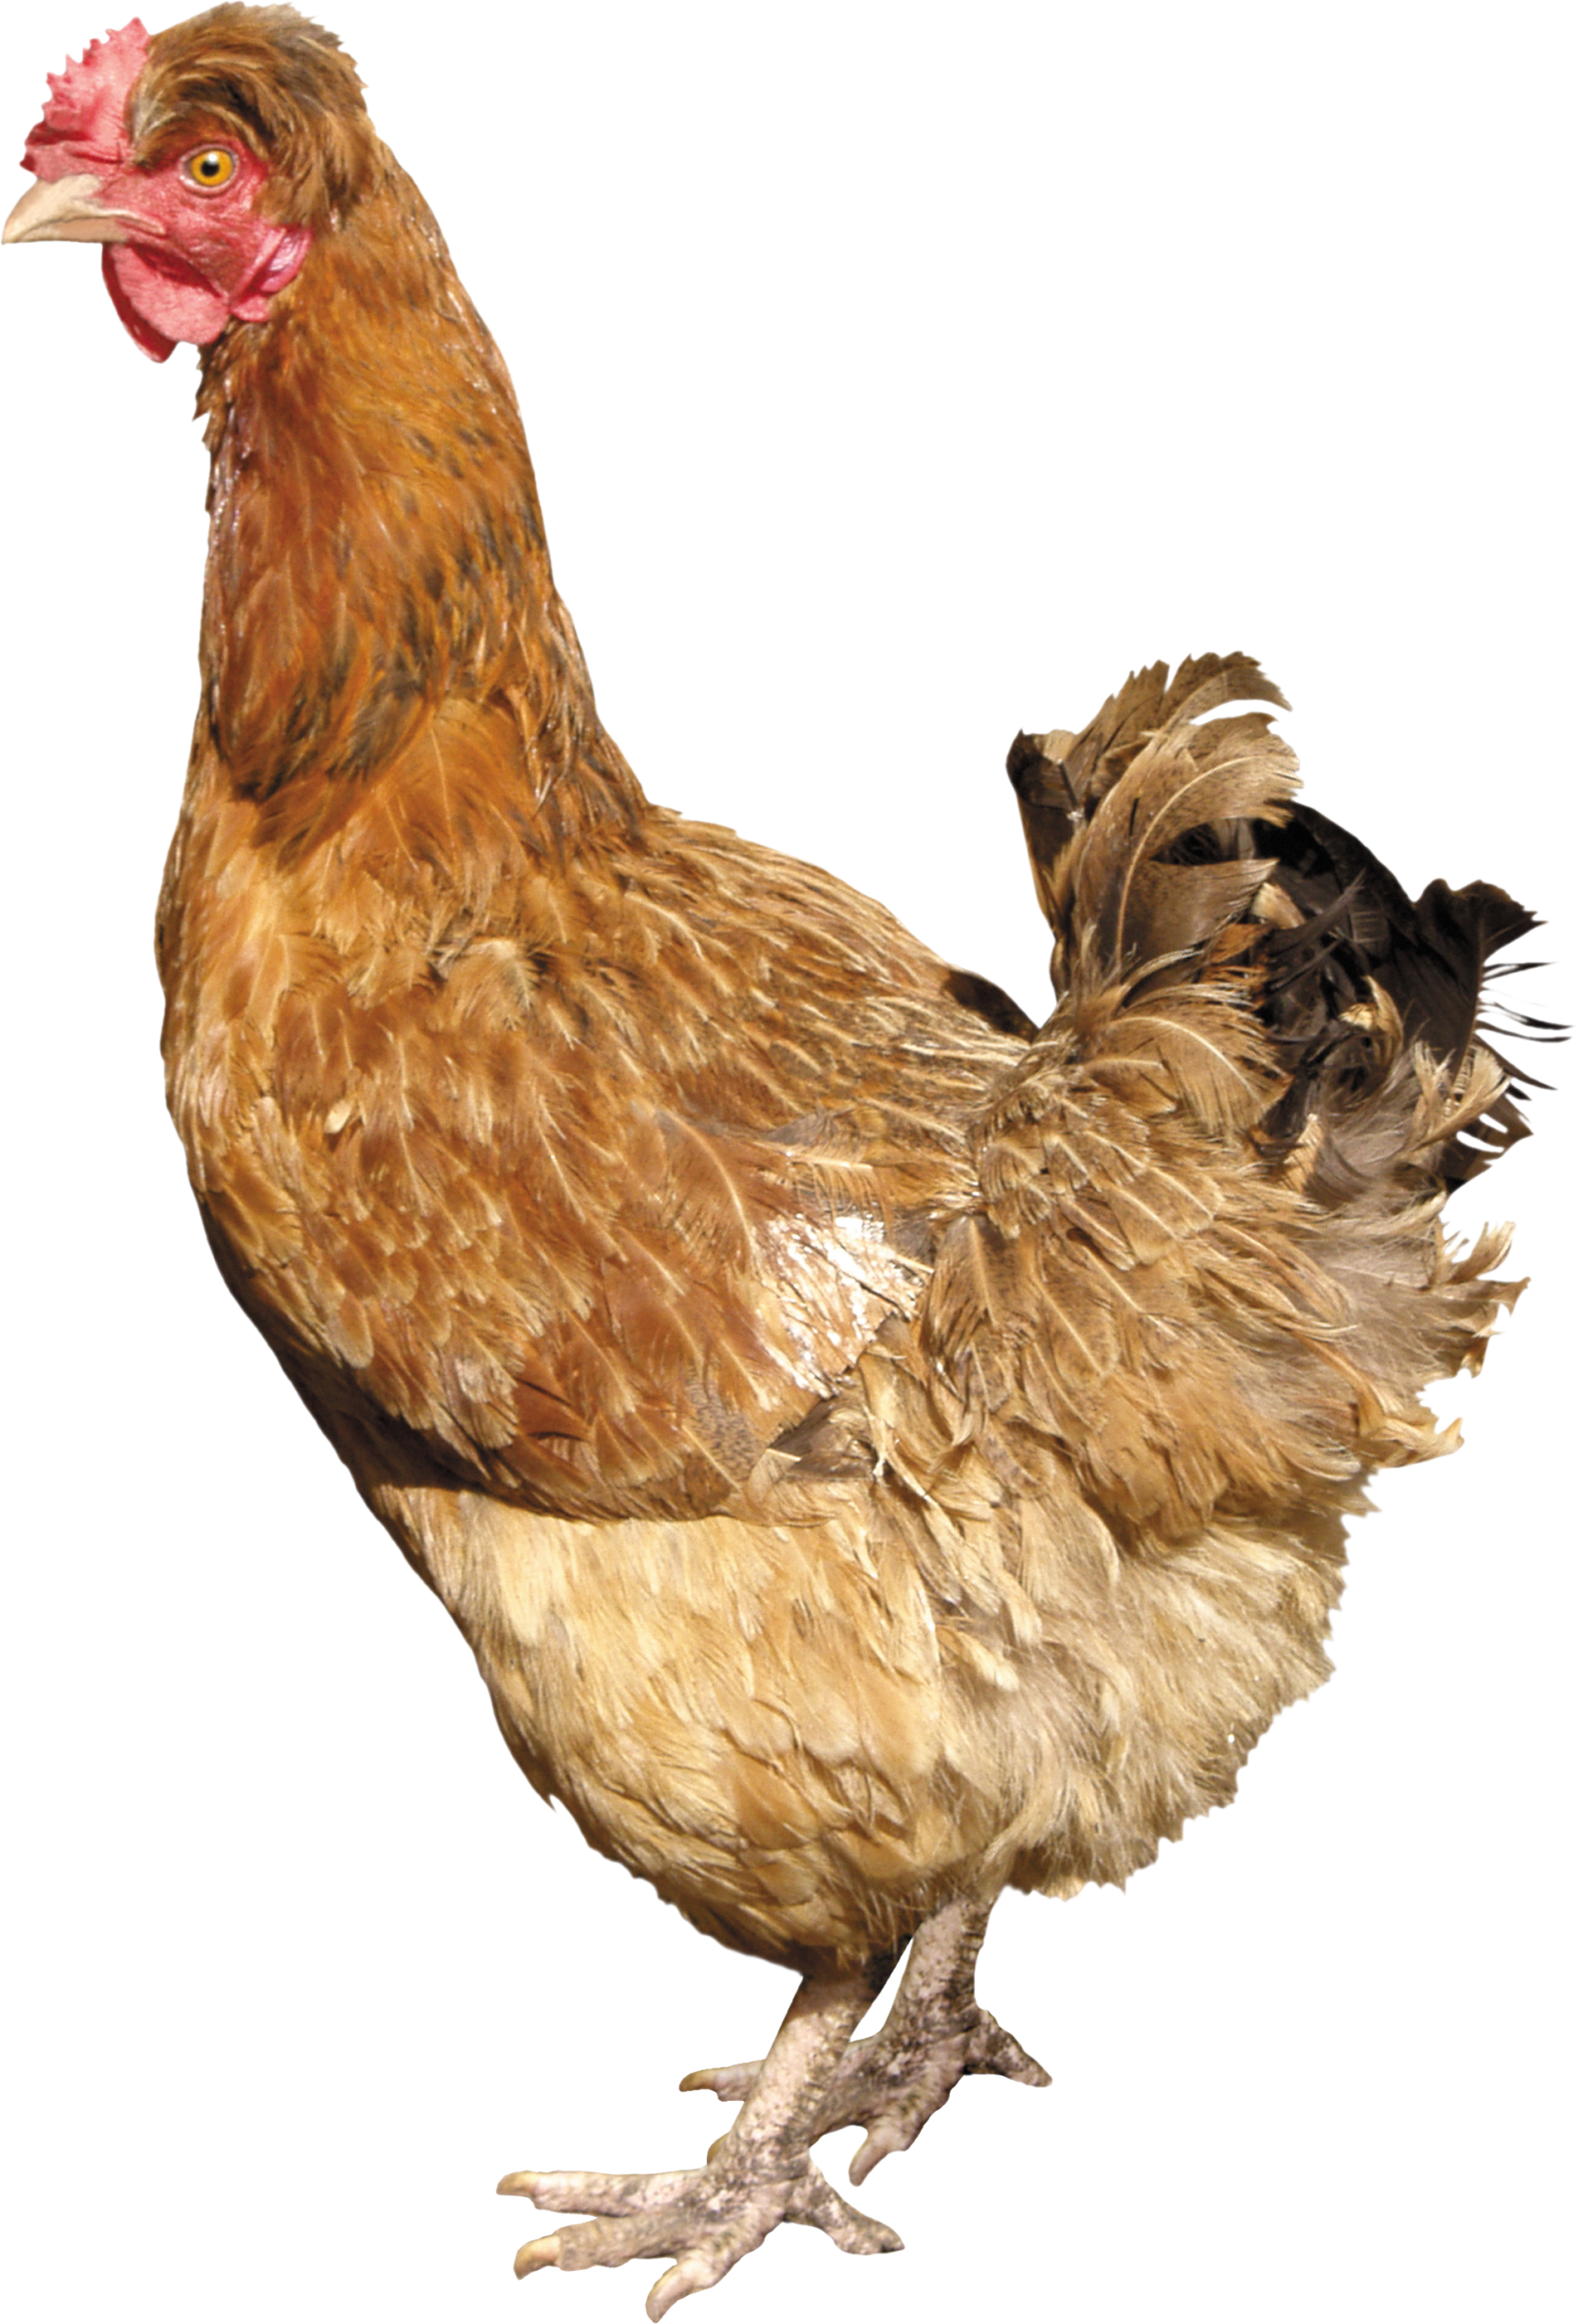 Chicken 24